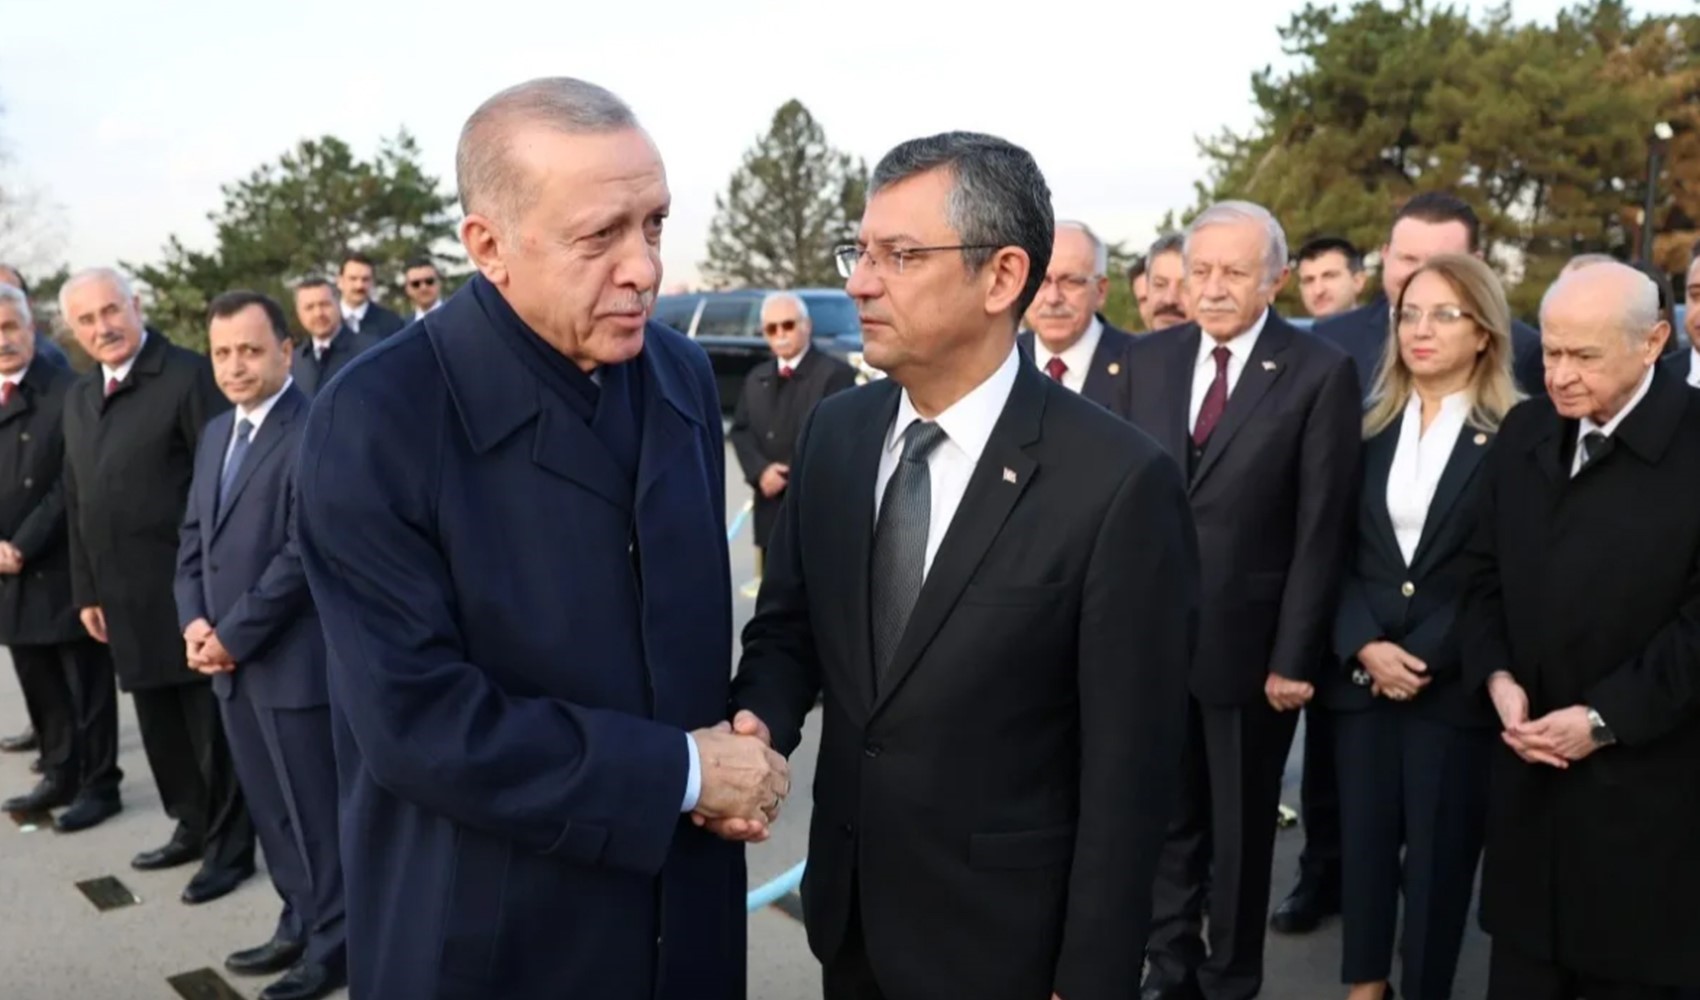 Özgür Özel Erdoğan'dan randevu talep edecek! Sinyal verilmişti